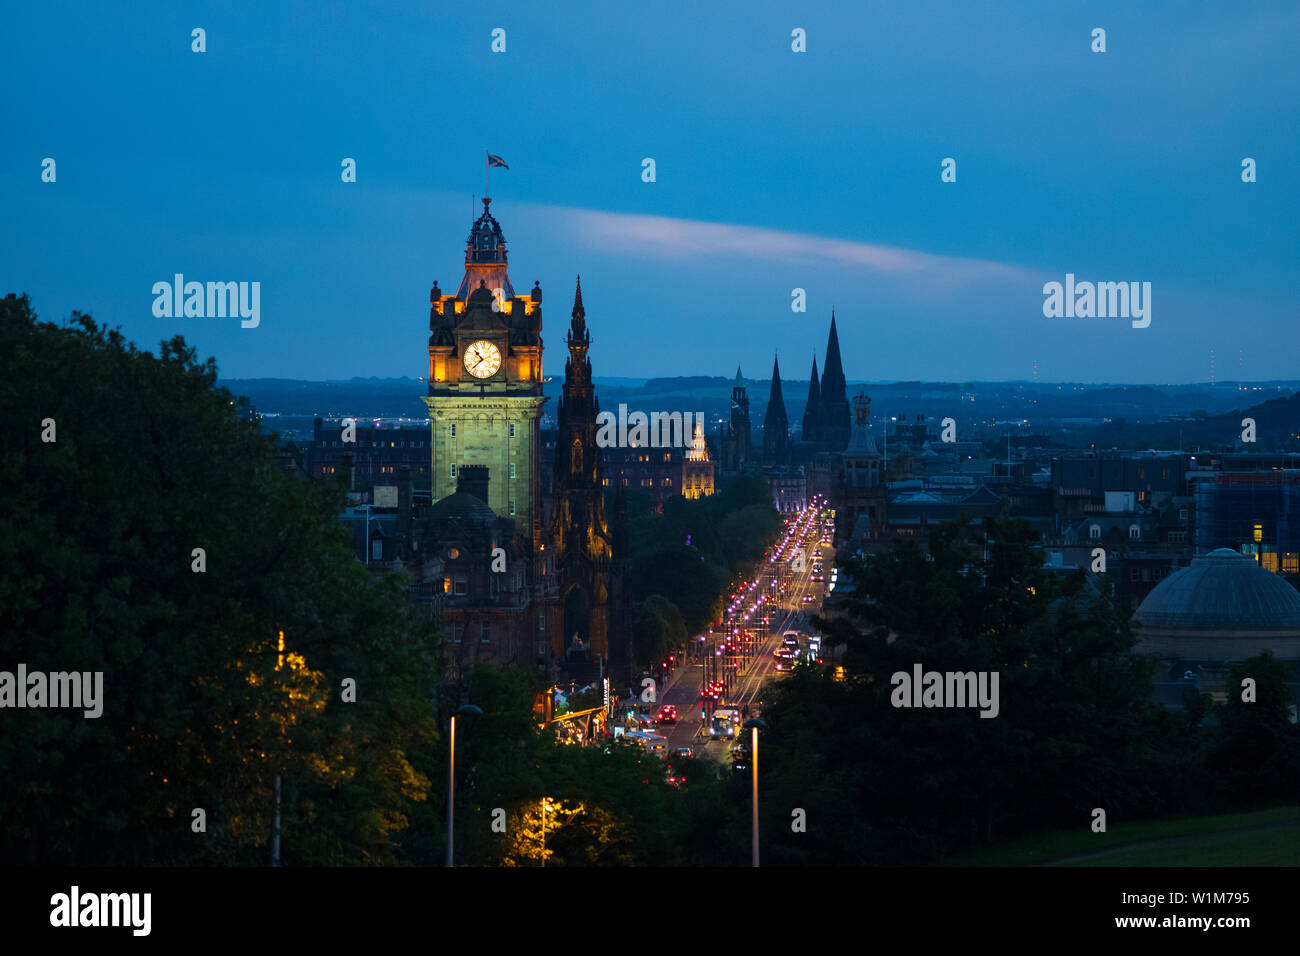 Das Balmoral, ursprünglich als der North British Station Hotel, von Calton Hill, ein UNESCO-Weltkulturerbe, Edinburgh, Schottland gesehen. Stockfoto